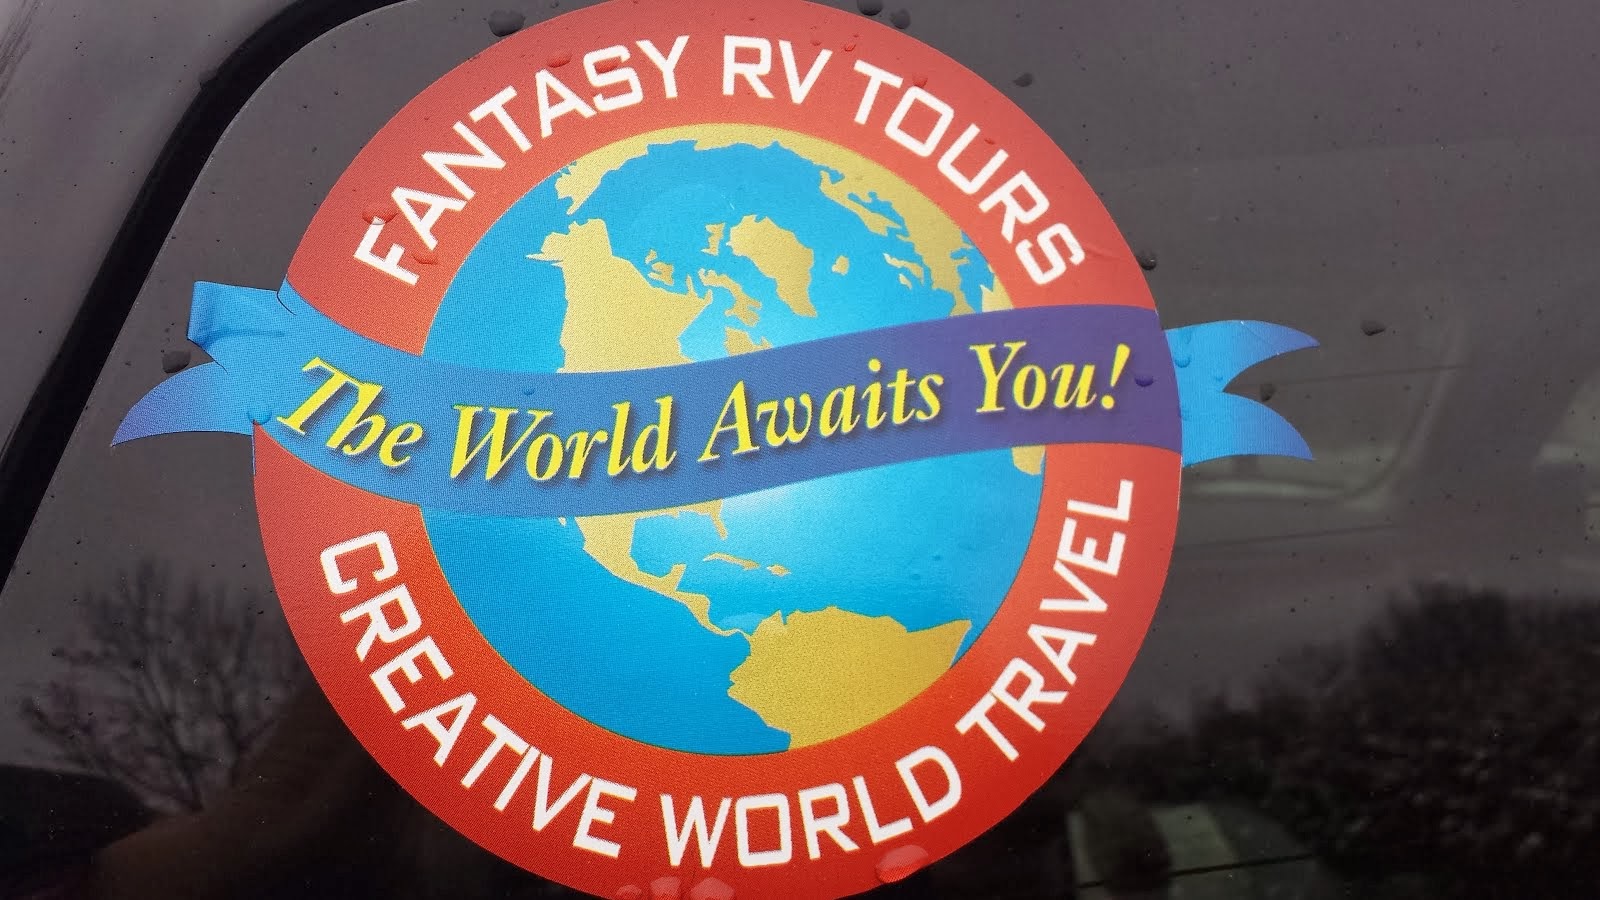 Fantasy RV Tours